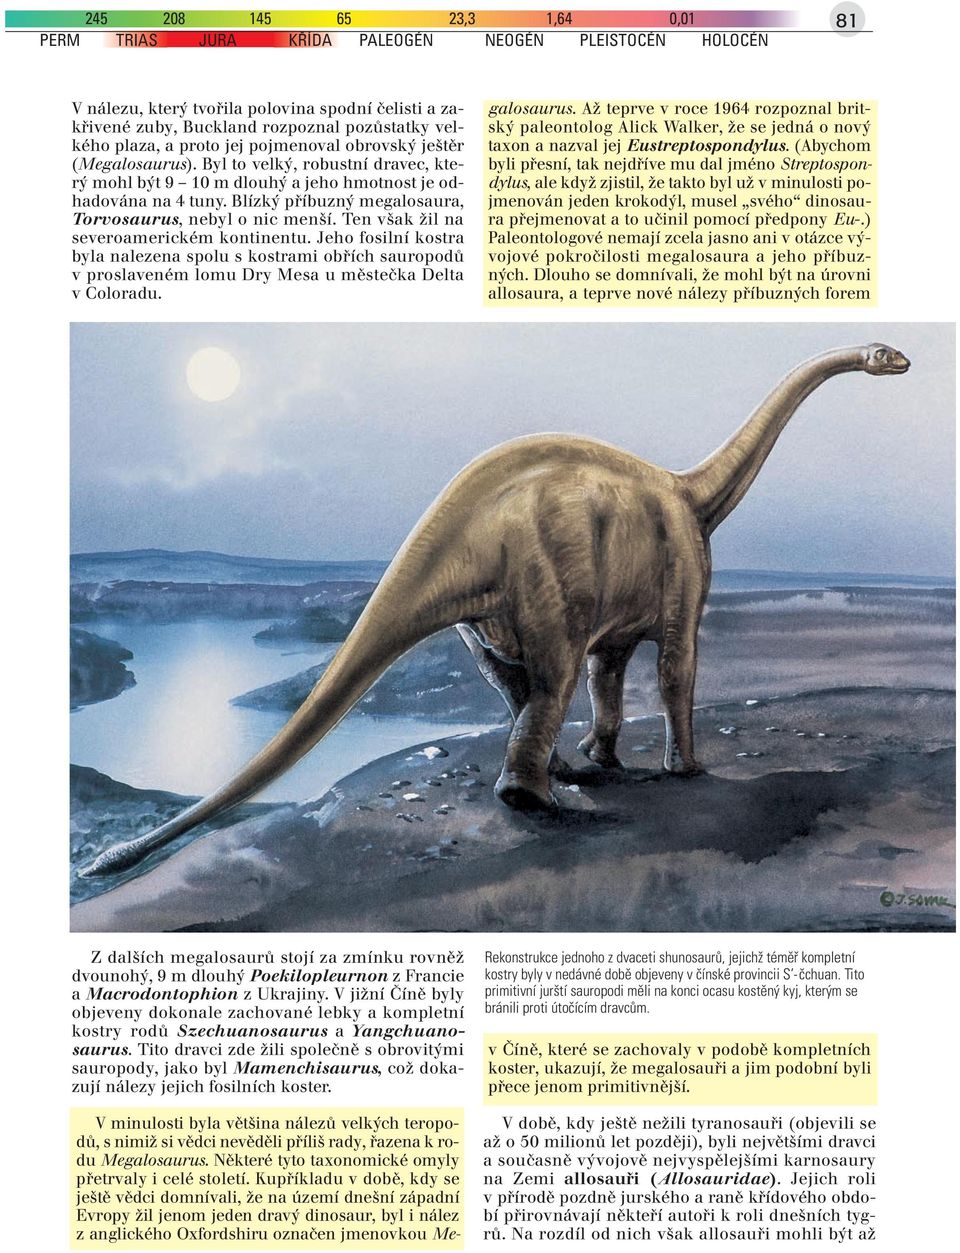 Blízký příbuzný megalosaura, Torvosaurus, nebyl o nic menší. Ten však žil na severoamerickém kontinentu.